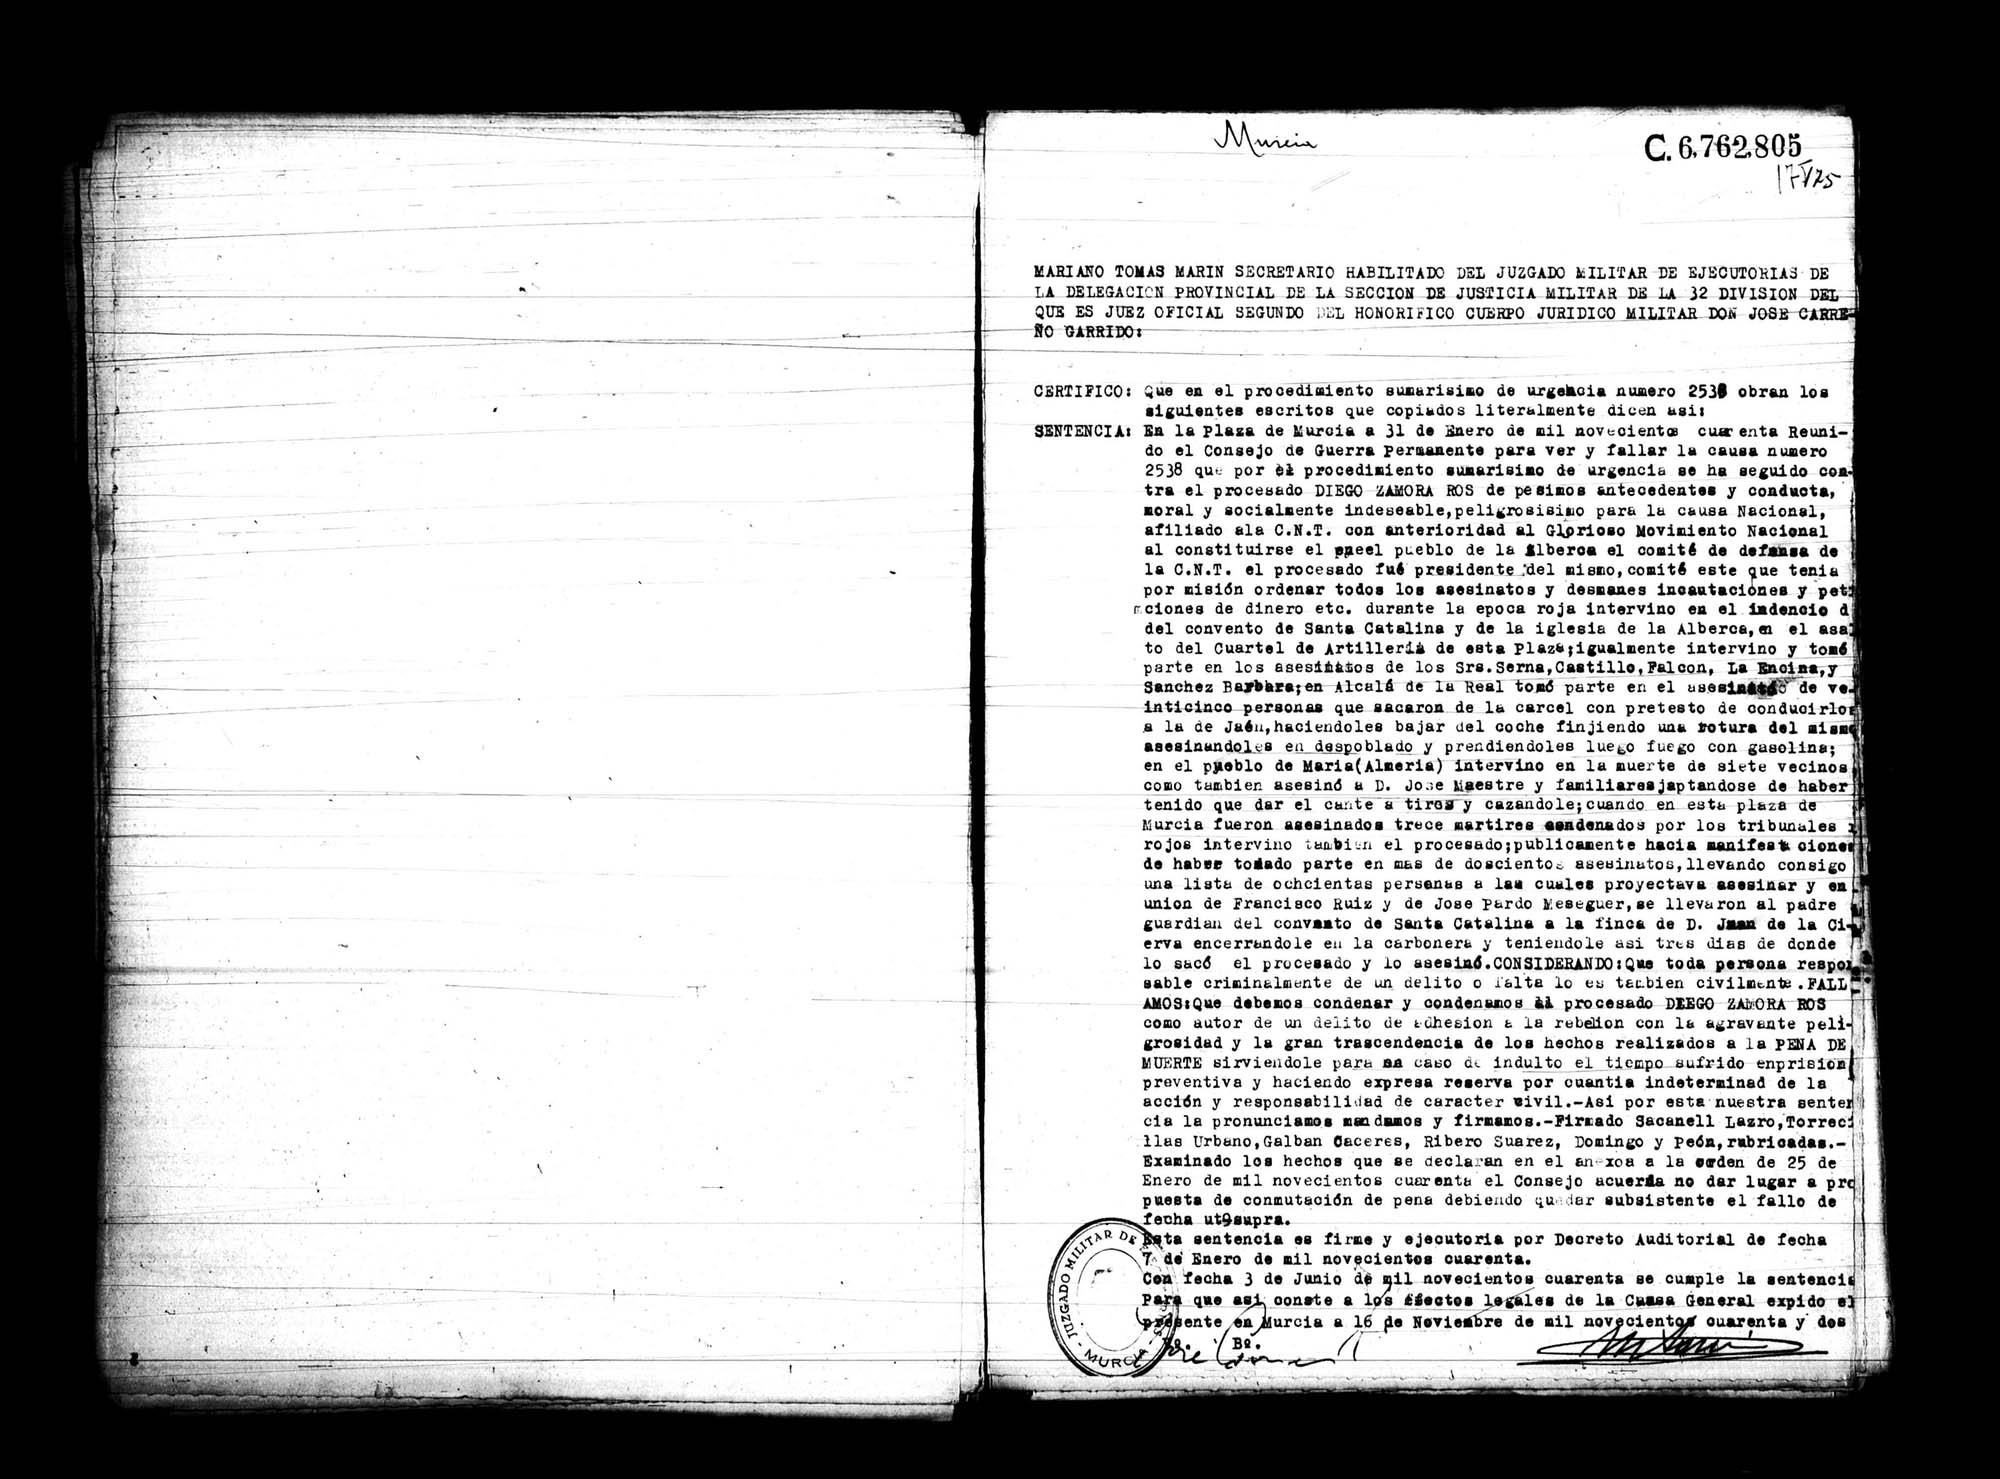 Certificado de la sentencia pronunciada contra Diego Zamora Ros, causa 2.538, el 31 de enero de 1940 en Murcia.